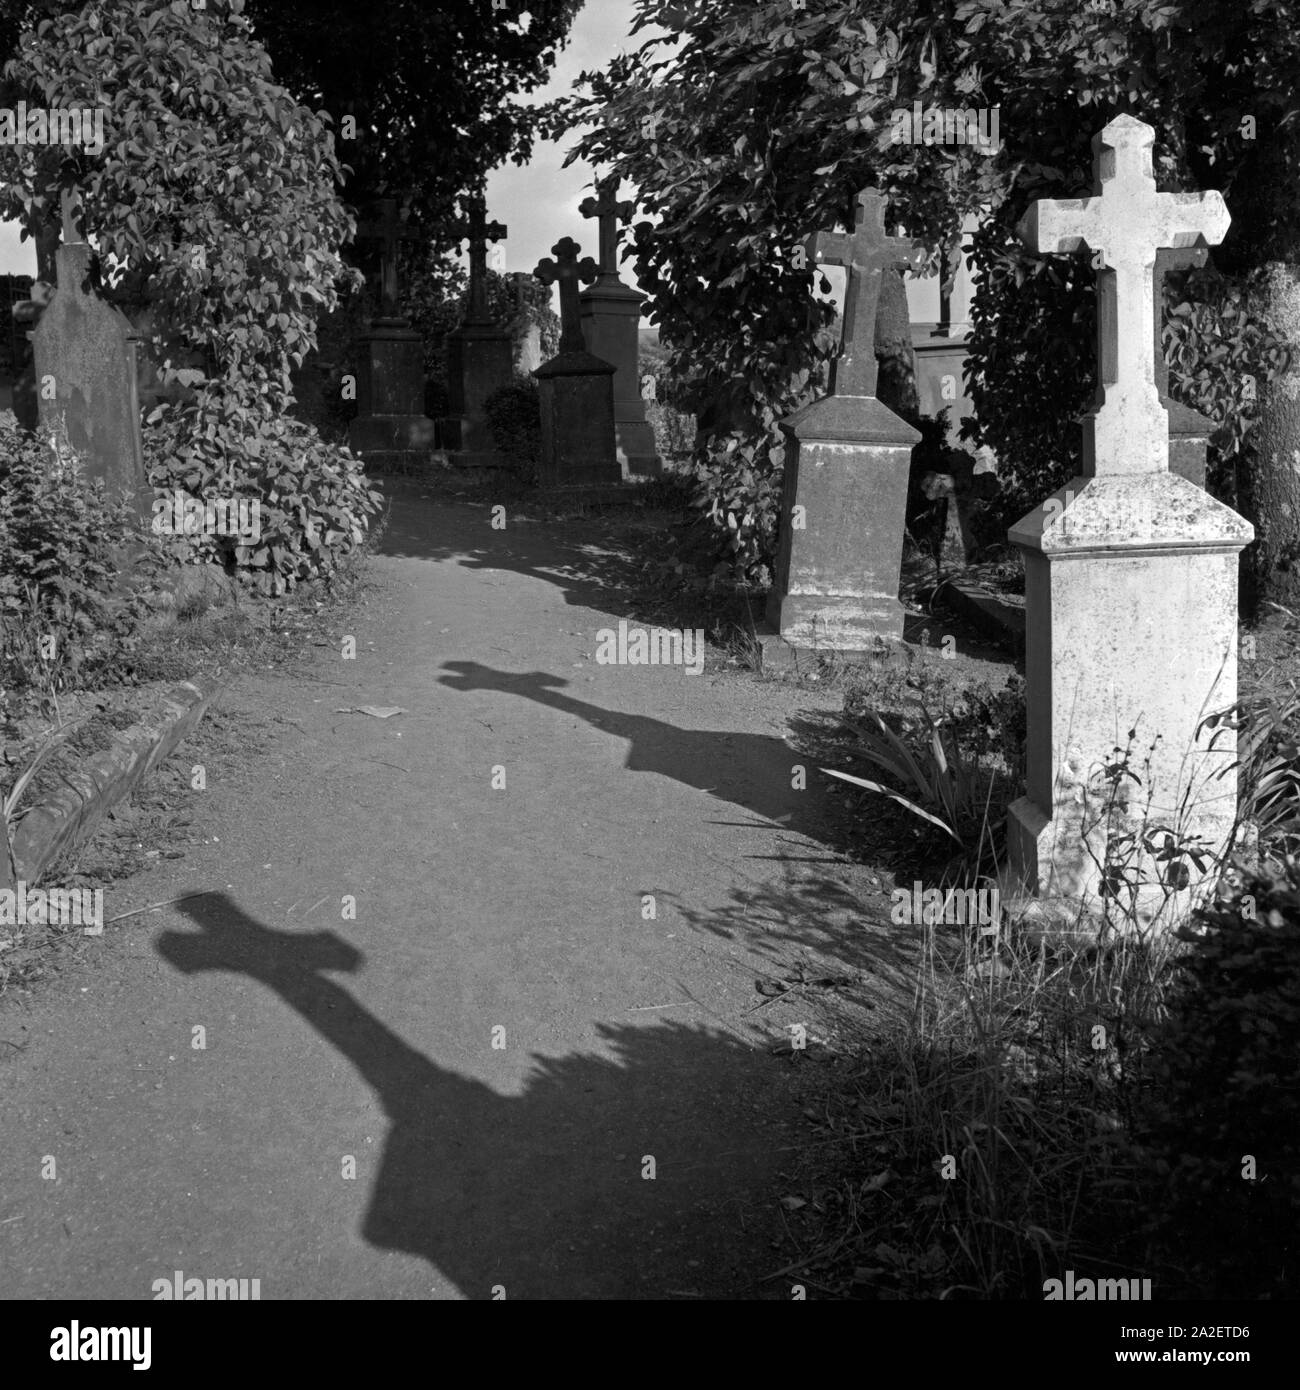 Grabkreuze auf dem Friedhof Weinfeld bei Daun in der Eifel, Deutschland 1930 er Jahre. Pierres tombales au cimetière de Weinfeld près de Daun à région de l'Eifel, Allemagne 1930. Banque D'Images